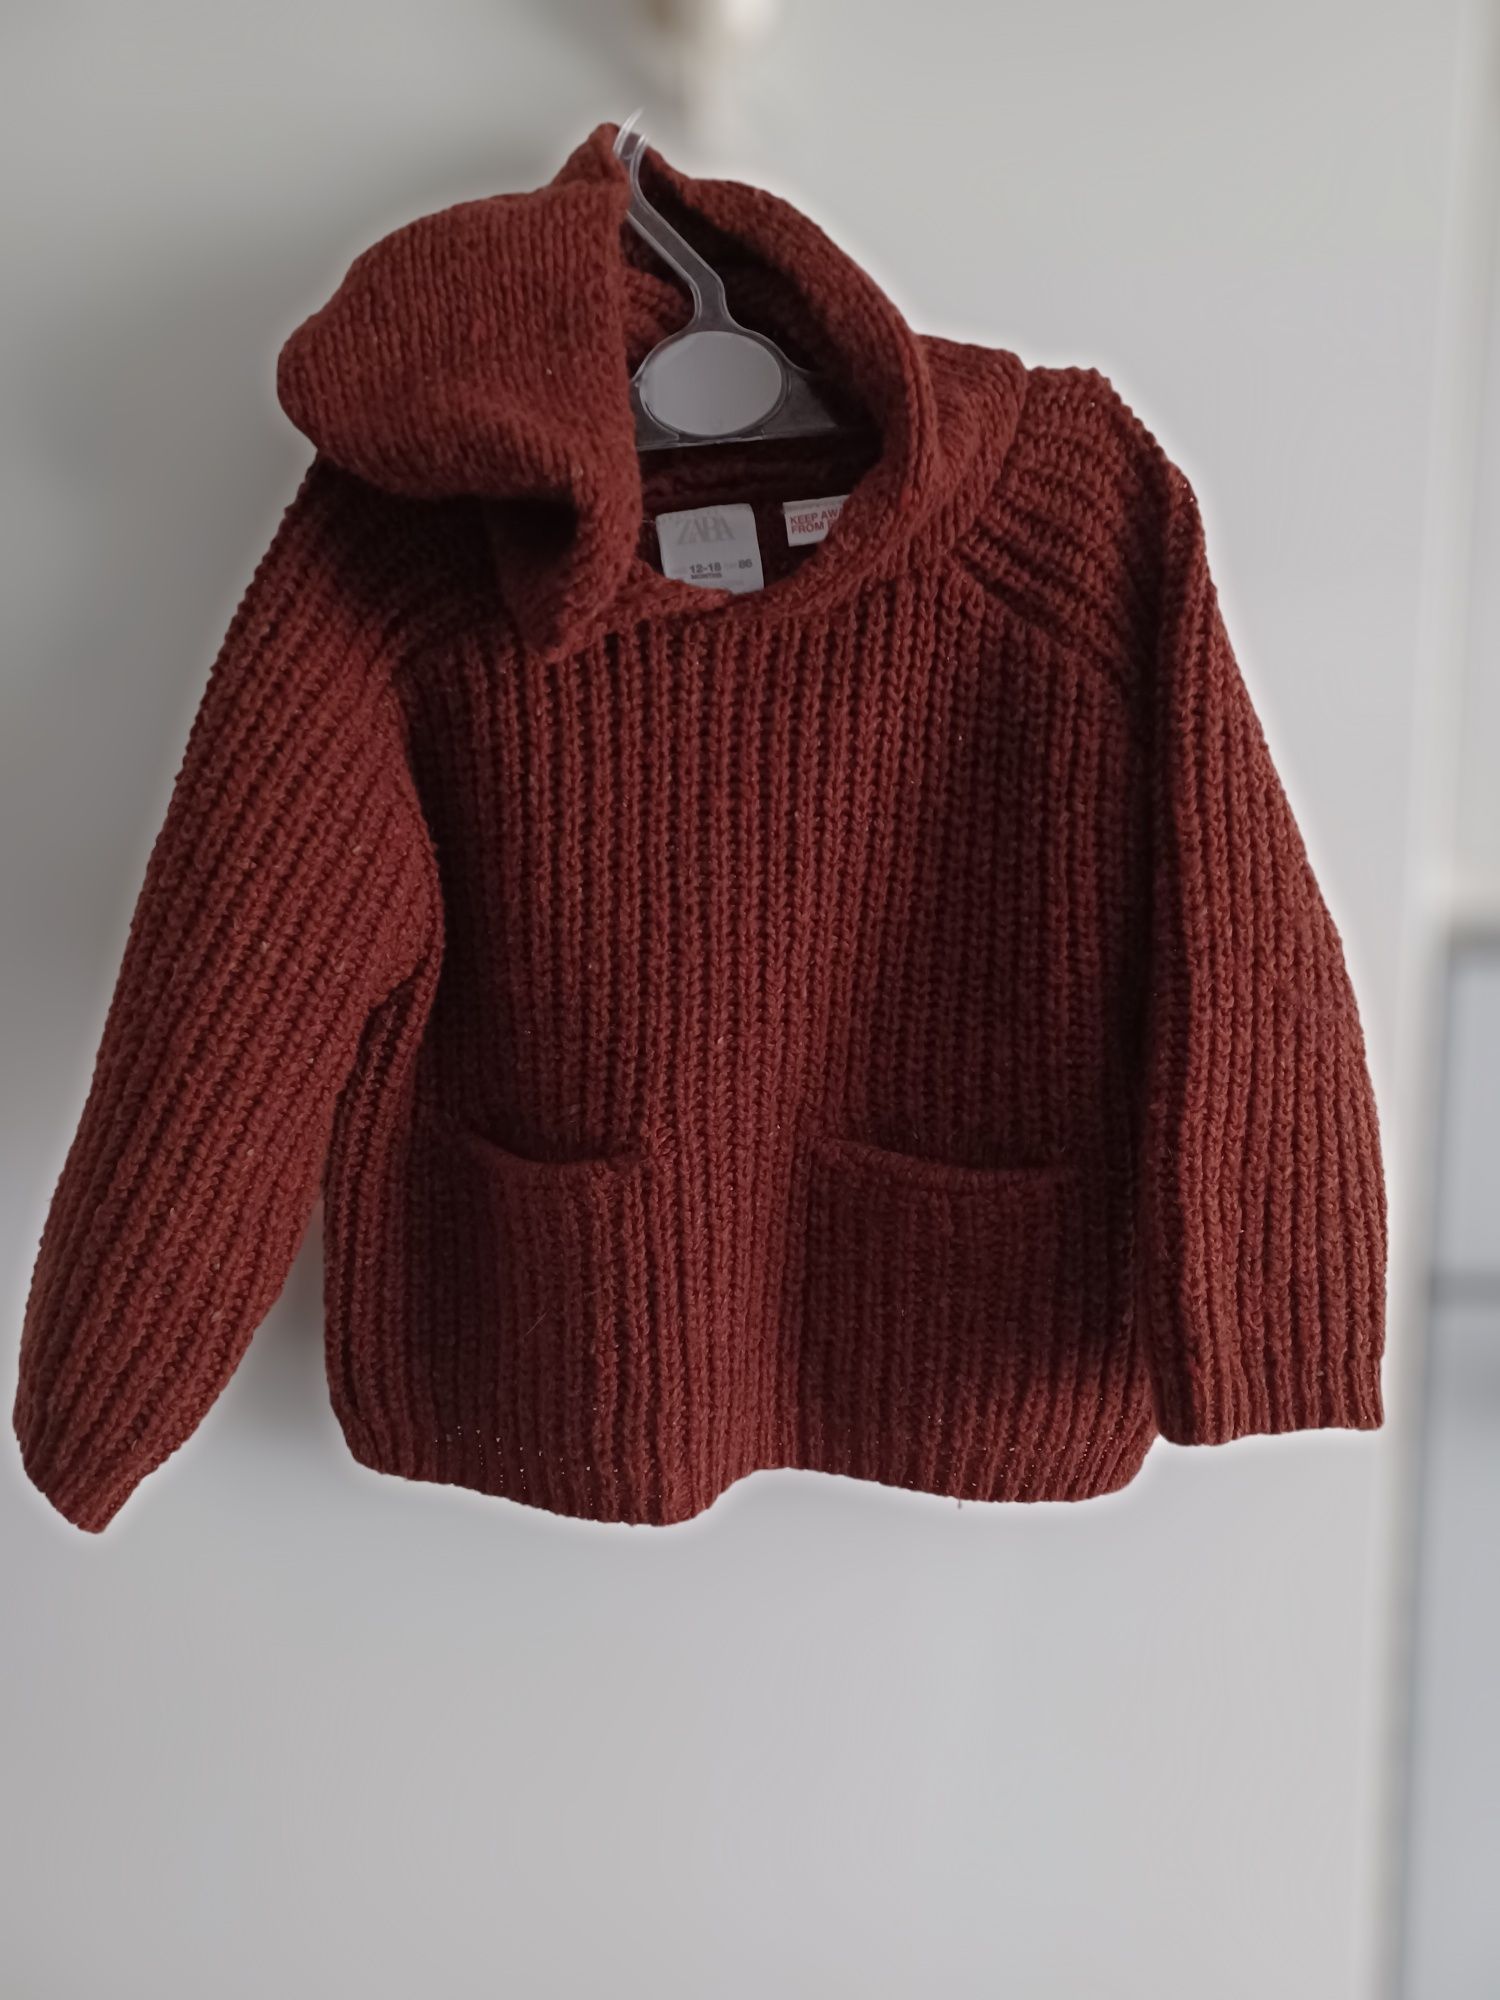 Sweterek, sweter Zara, rozmiar 86